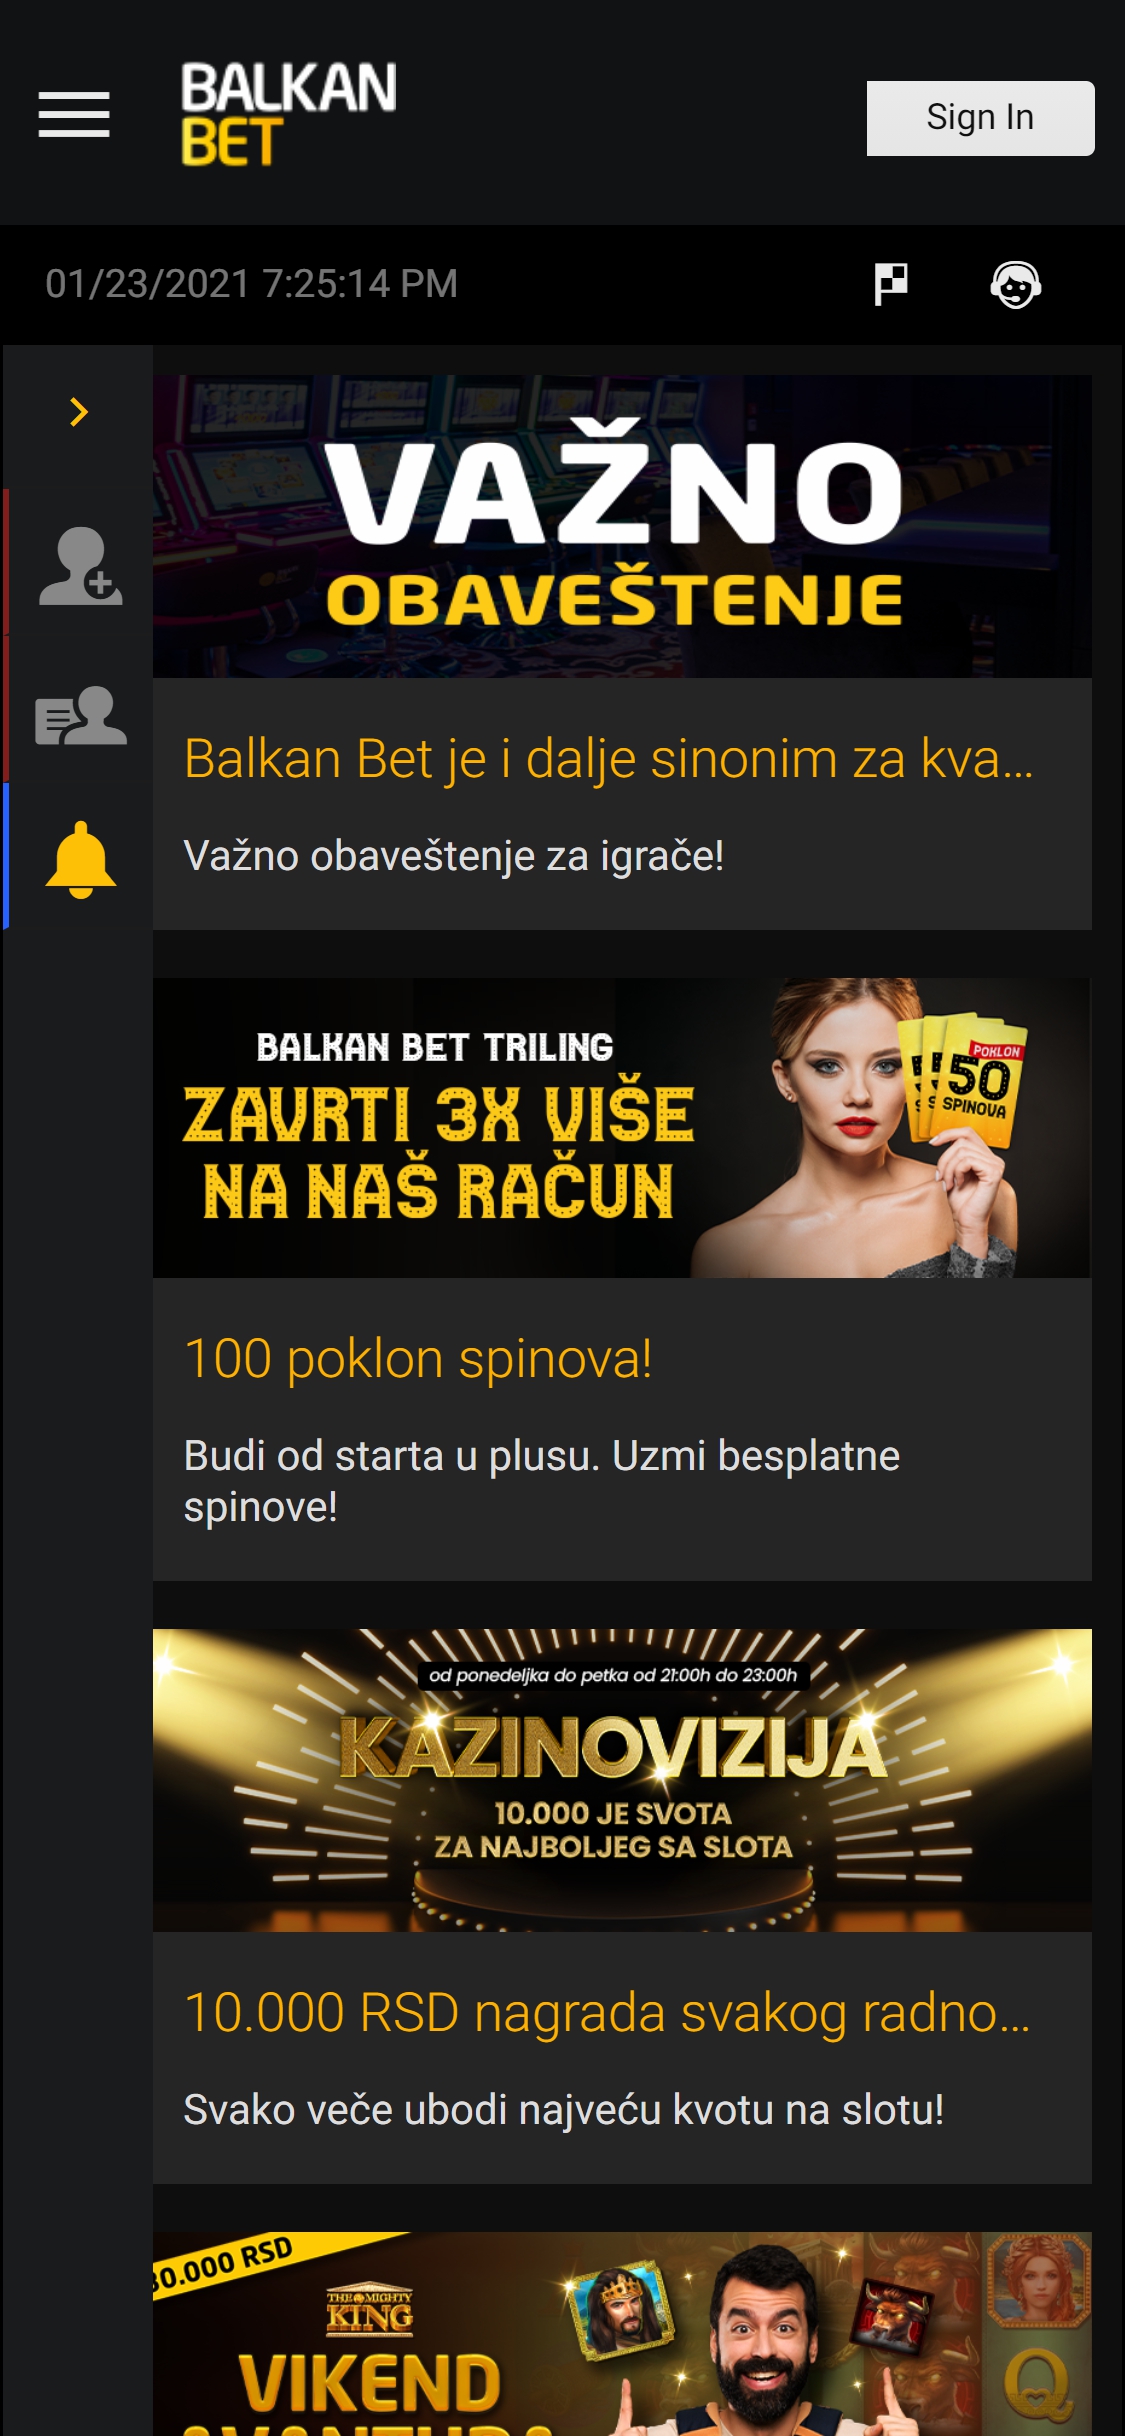 Balkan Bet Casino Mobile No Deposit Bonus Review